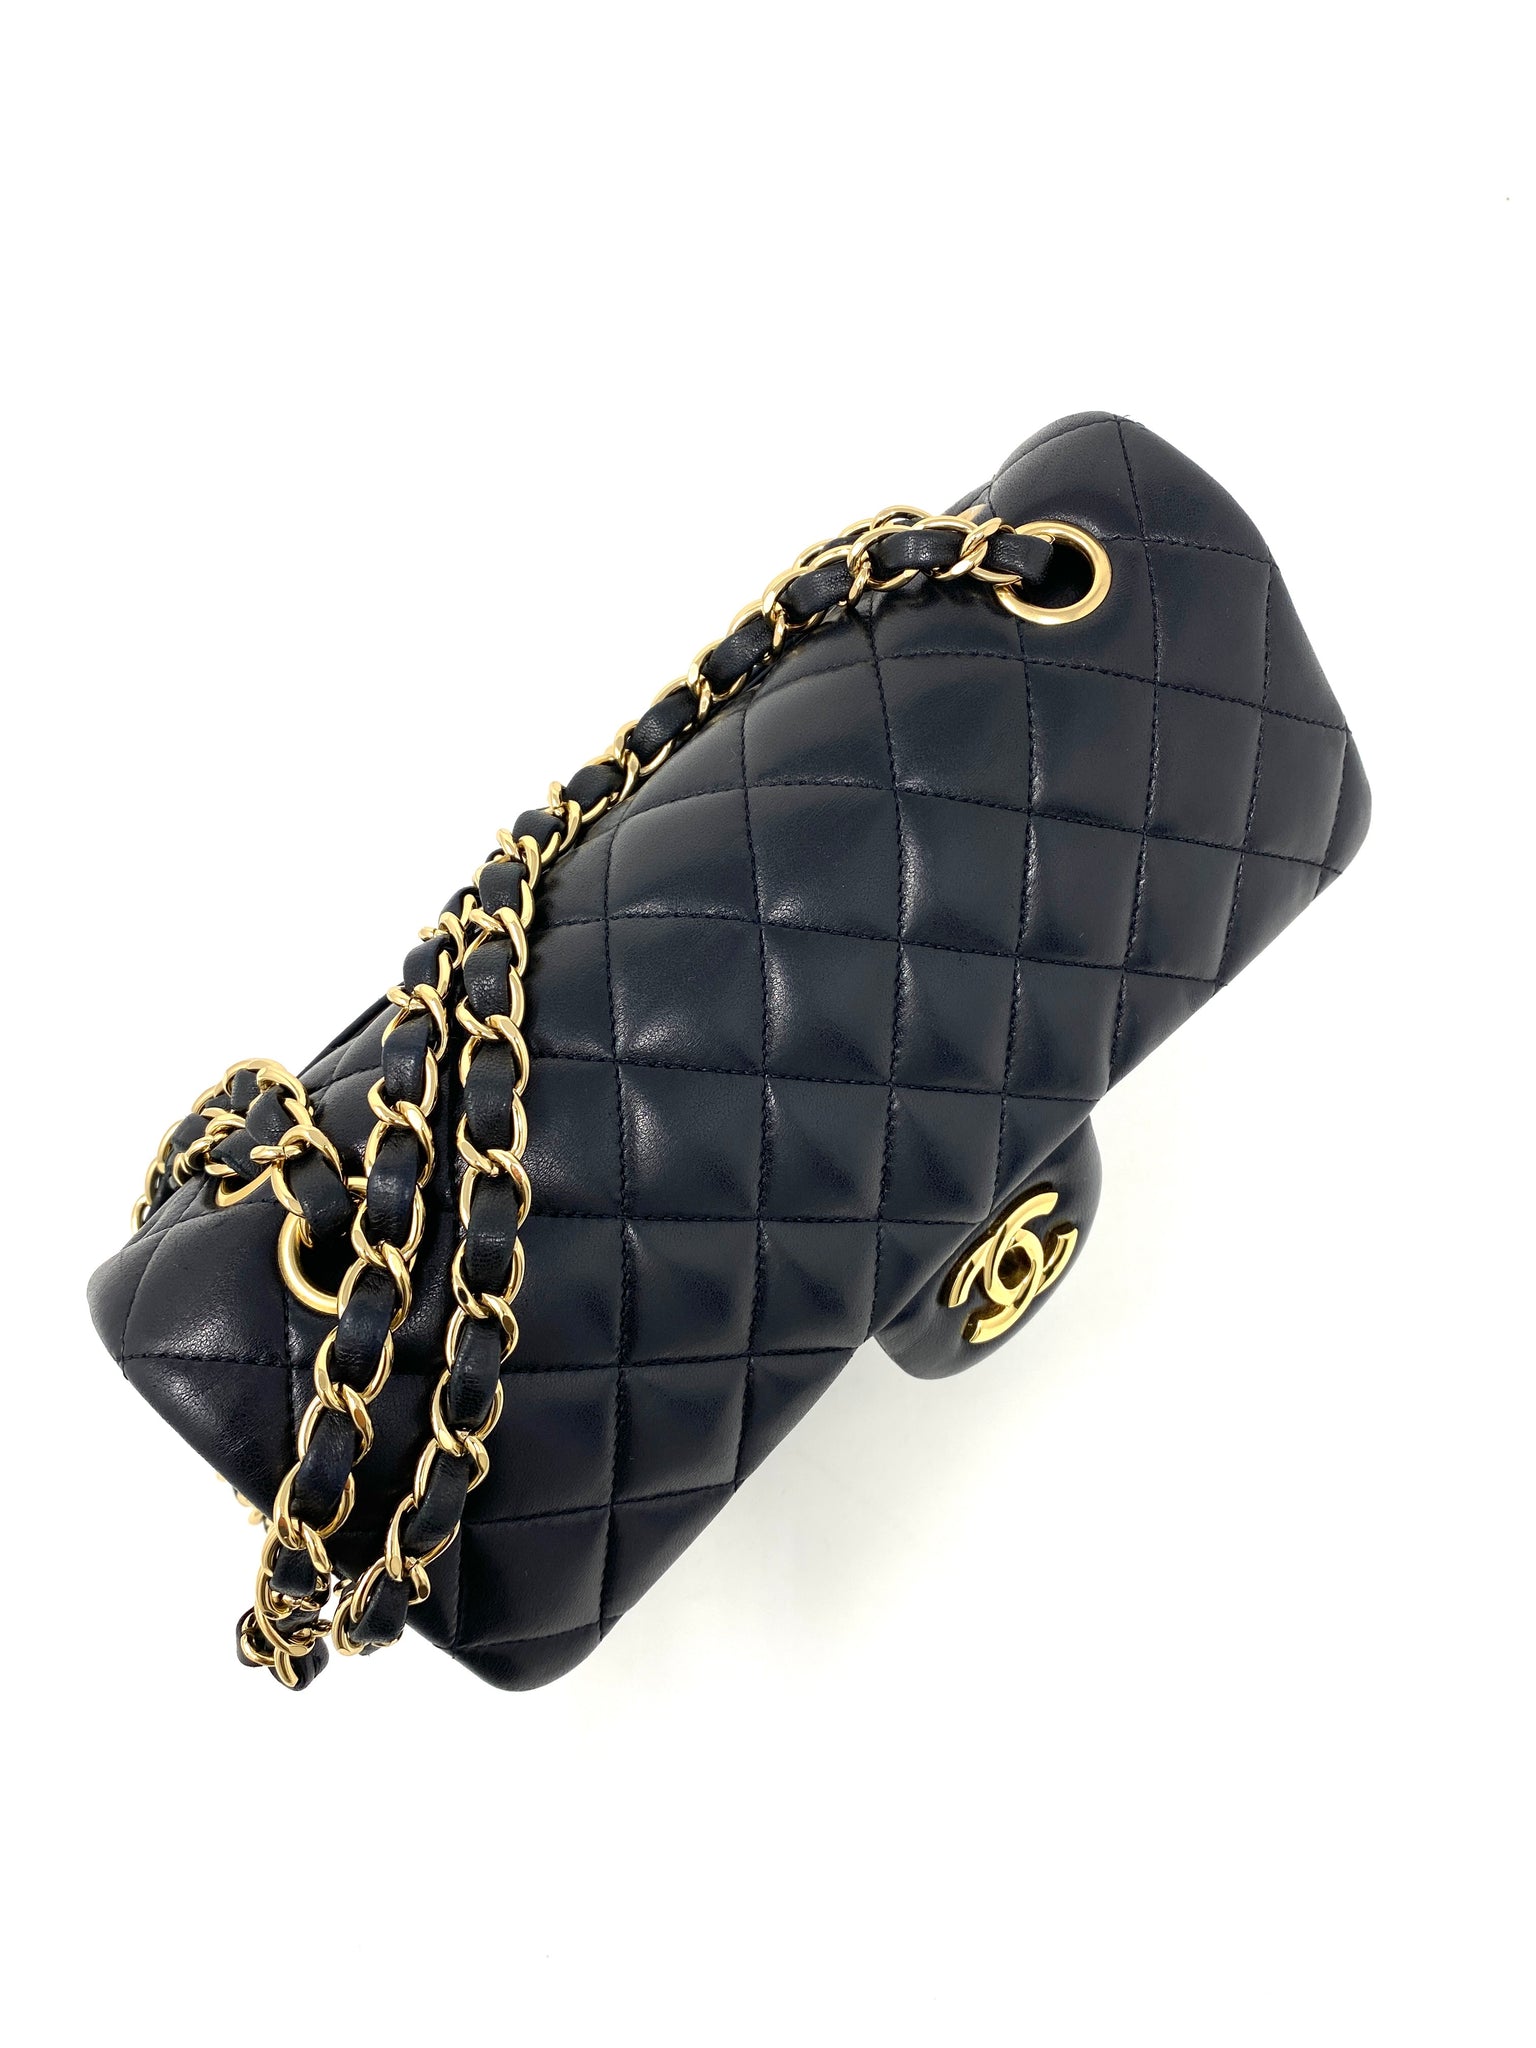 Mua Túi Đeo Chéo Nữ Chanel Small Flap Bag Lambskin  GoldTone Metal Màu  Hồng Nhạt  Chanel  Mua tại Vua Hàng Hiệu h089191